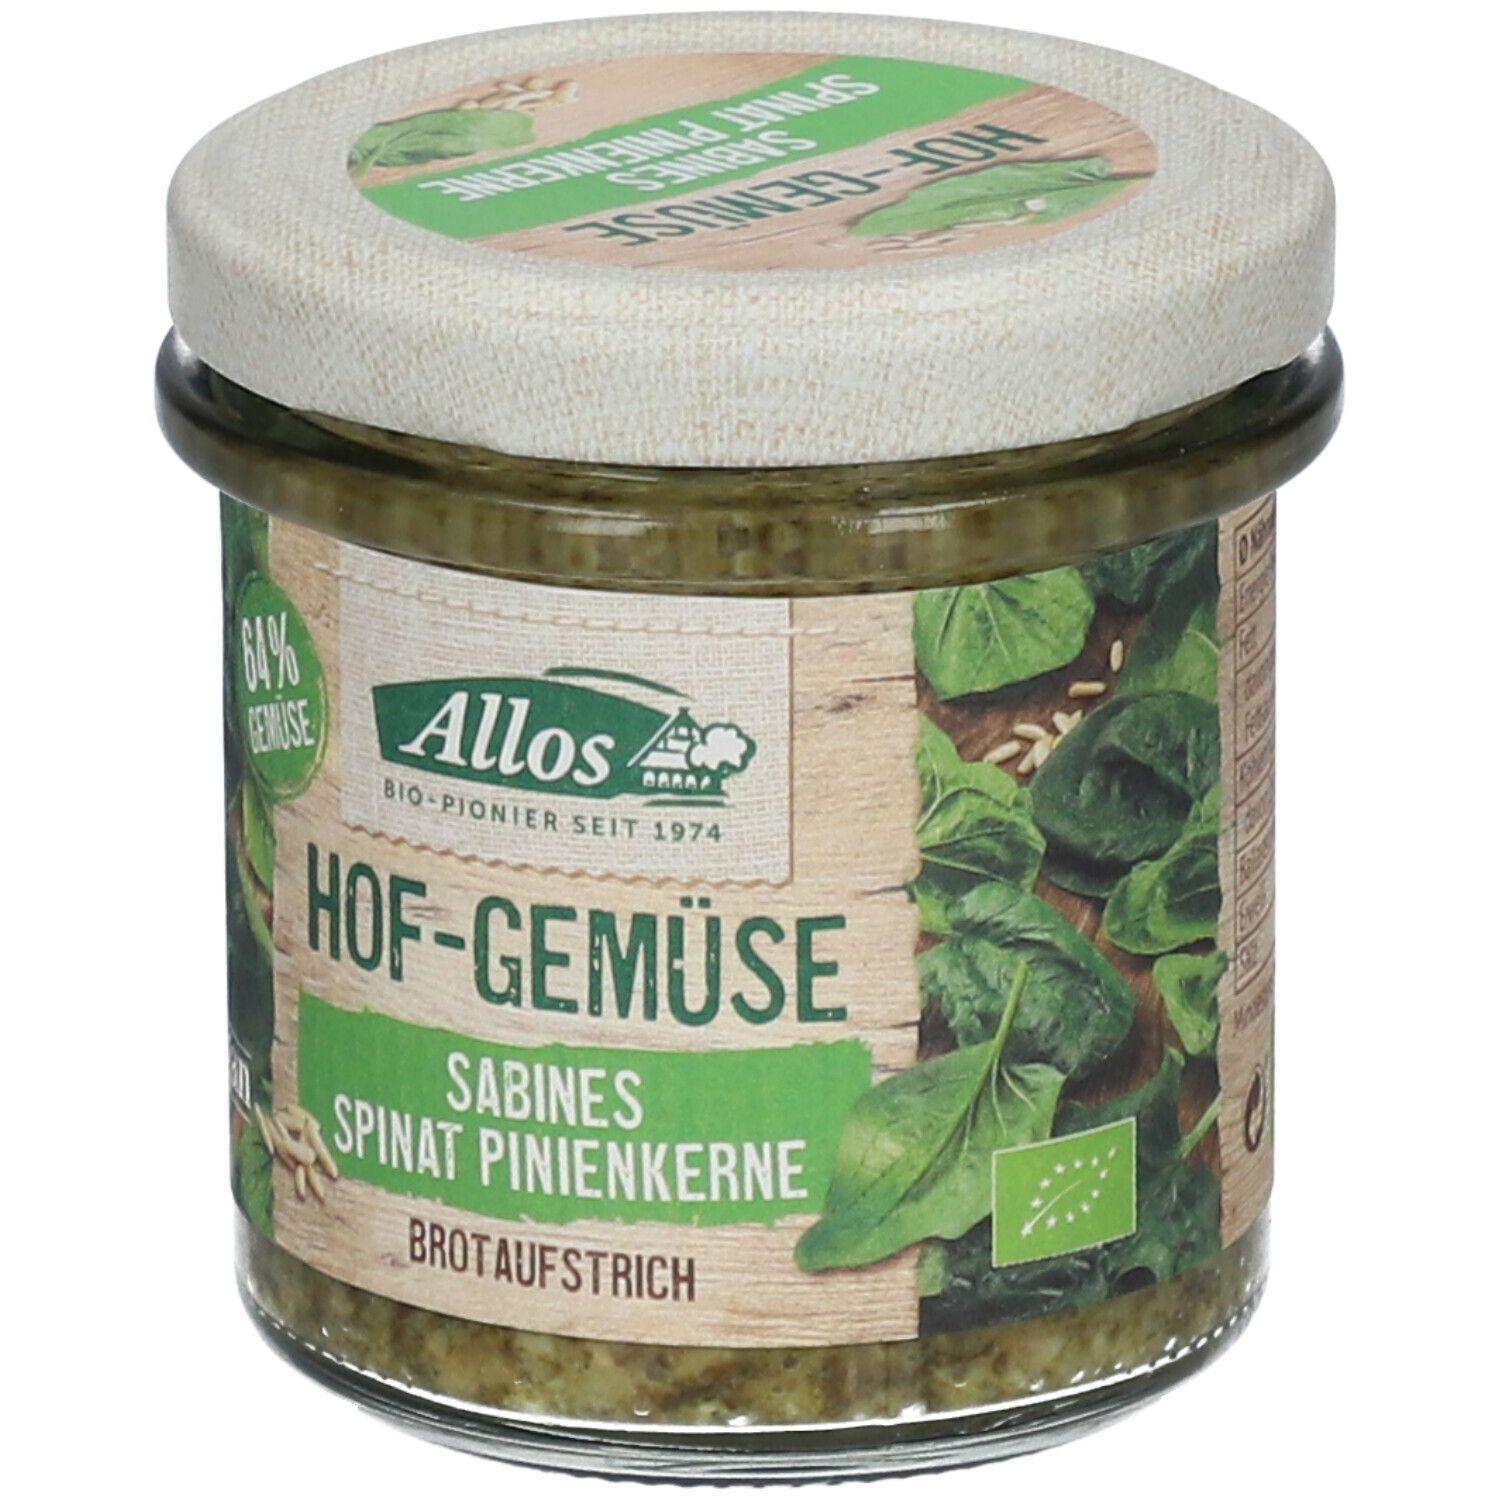 Allos Hof-Gemüse Sabines Spinat Pinienkerne Brotaufstrich